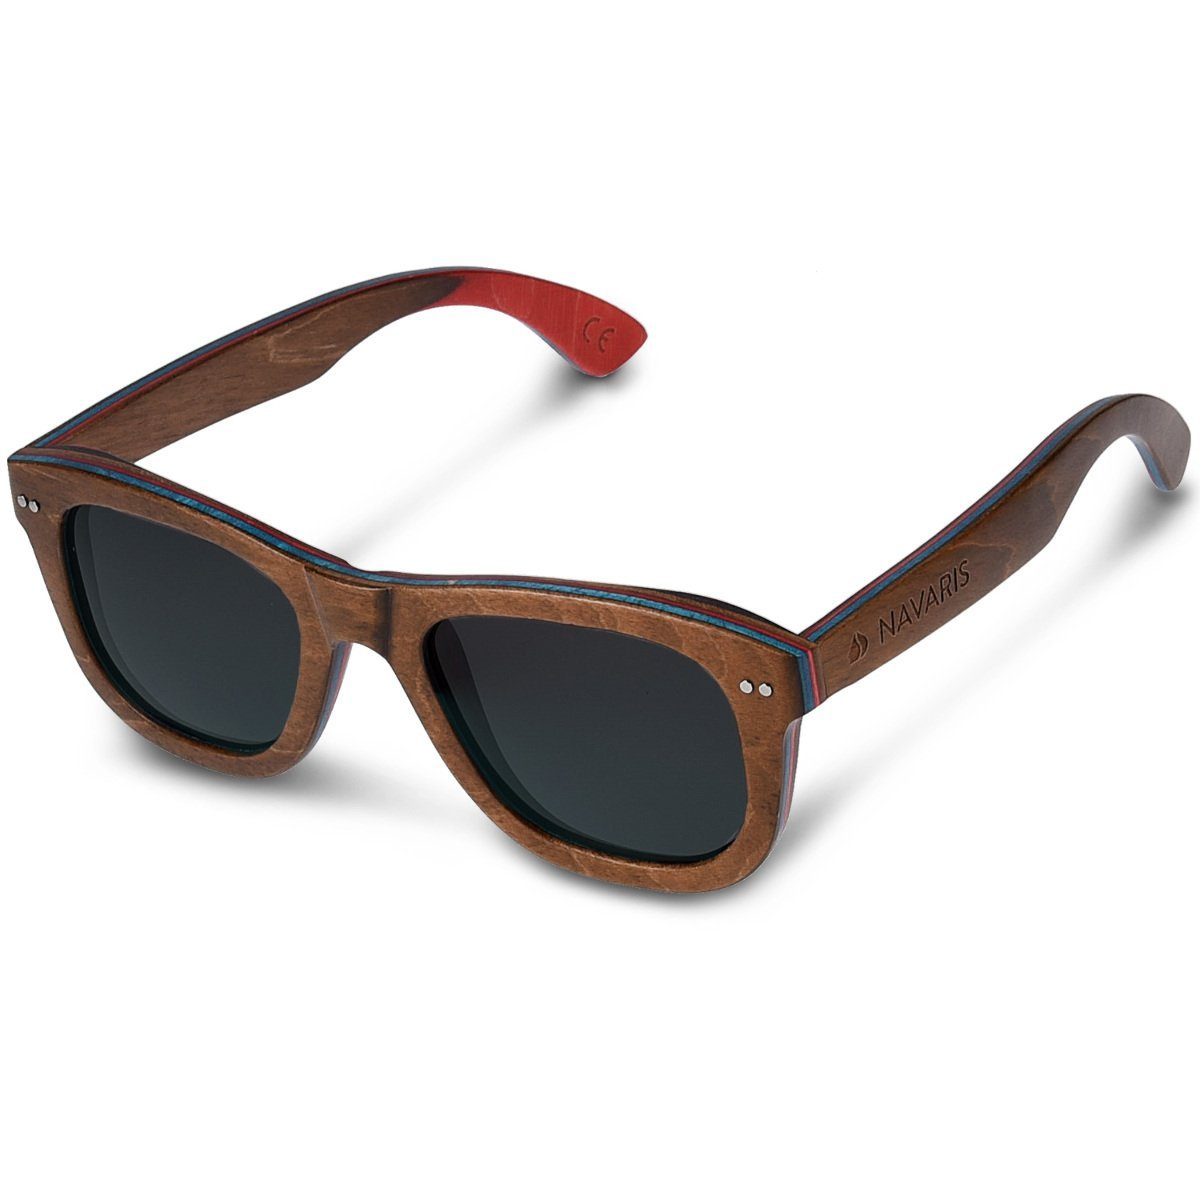 Navaris Sonnenbrille UV400 Damen Herren Holz Brille unisex - polarisierte  Holzbrille aus Skateboard Holz - Holzoptik online kaufen | OTTO